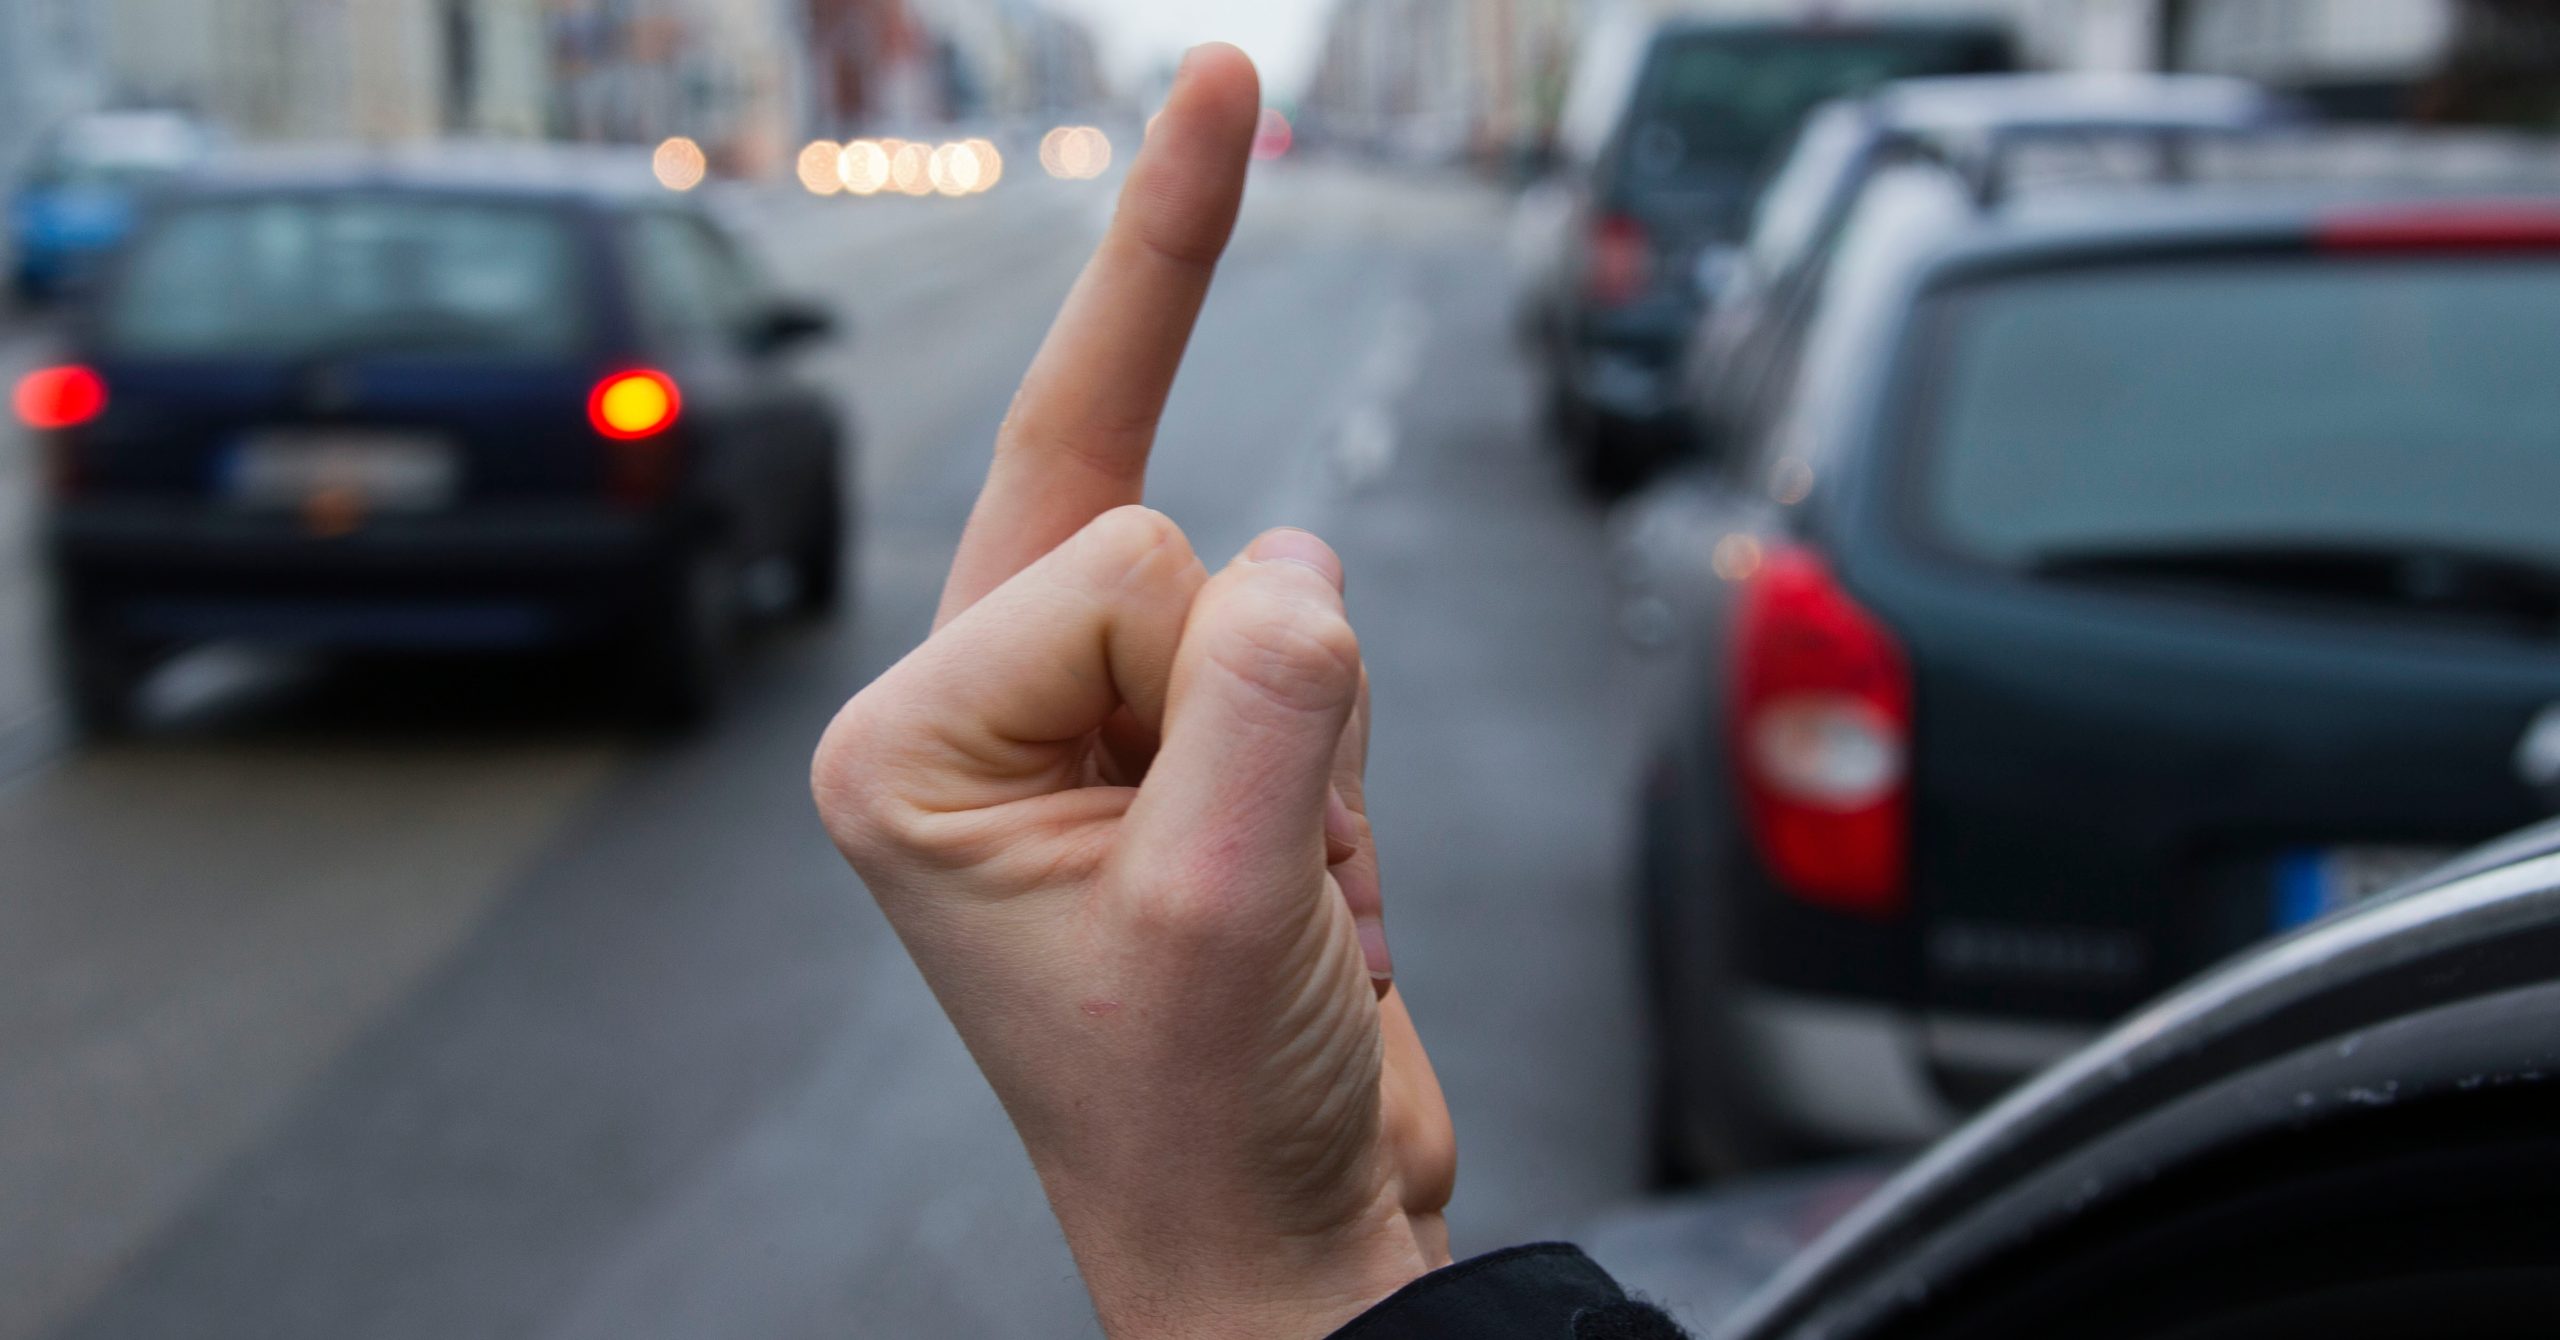 Von „Bekloppter“ bis „Alte Sau“: Beleidigungen im Straßenverkehr